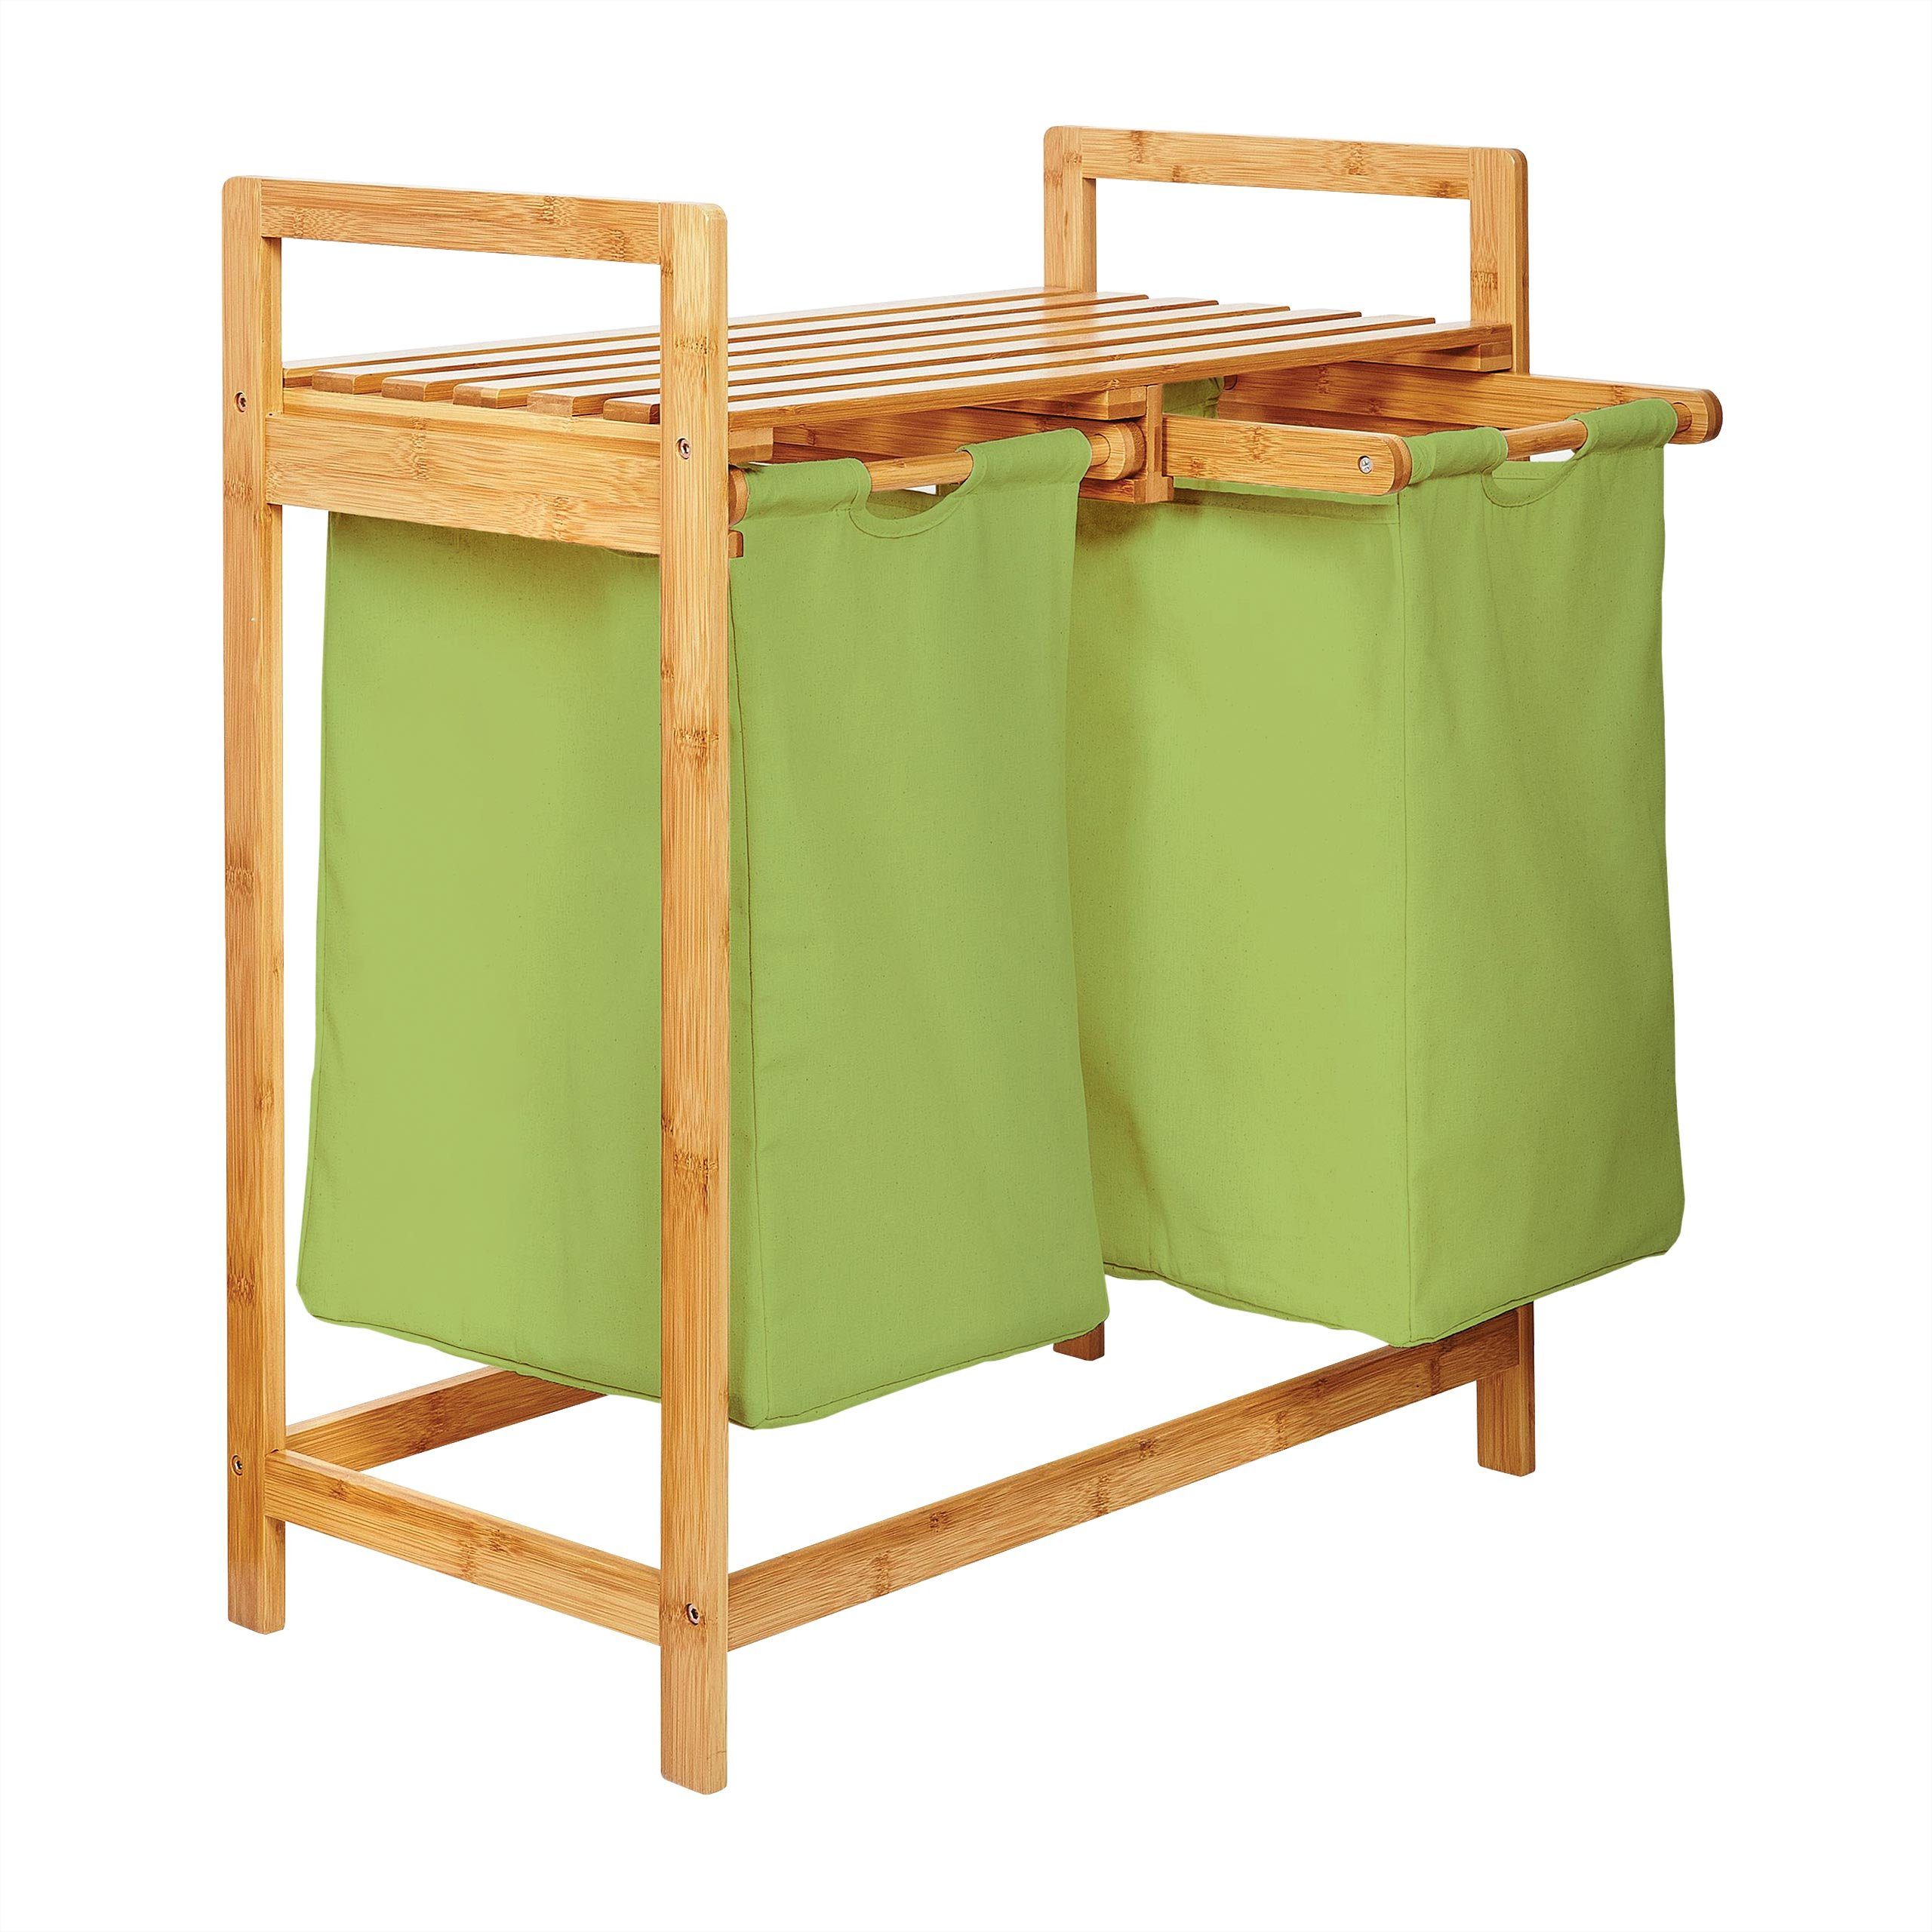 Lumaland Ausziehwäschekorb Bambus Wäschekorb – 2 Wäschesäcke – 73x64x33cm (Sitzbank + Wäschekorb), stabiler Wäschesammler mit Deckel